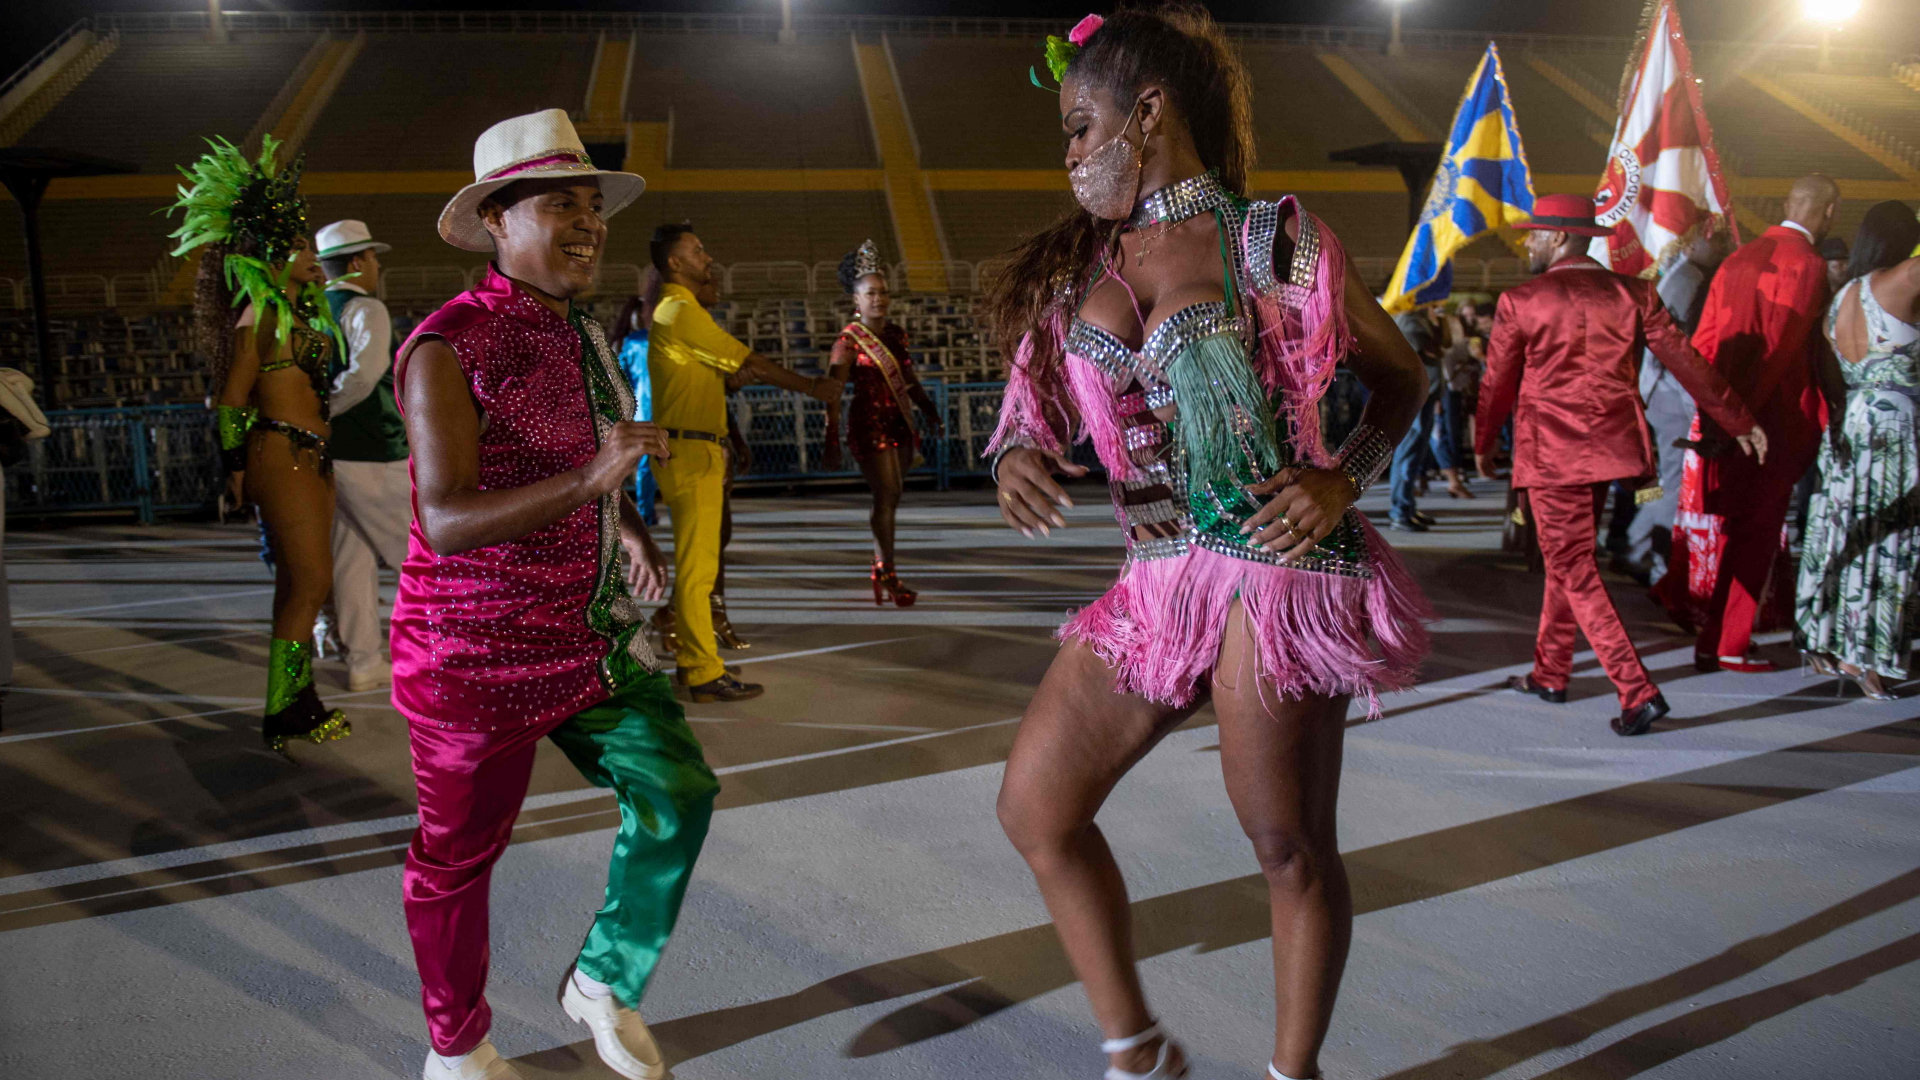 Mitglieder der Carnival Samba Schule tanzen angesichts des erneuerten Marques de Sapucai Sambadroms in Rio de Janeiro, Brasilien. Wegen der Corona-Pandemie wird es dieses Jahr nur vereinzelte Feste in geschlossenen Räumen geben, der große Straßenumzug durch Rio de Janeiro wurde auf April verschoben. | AFP